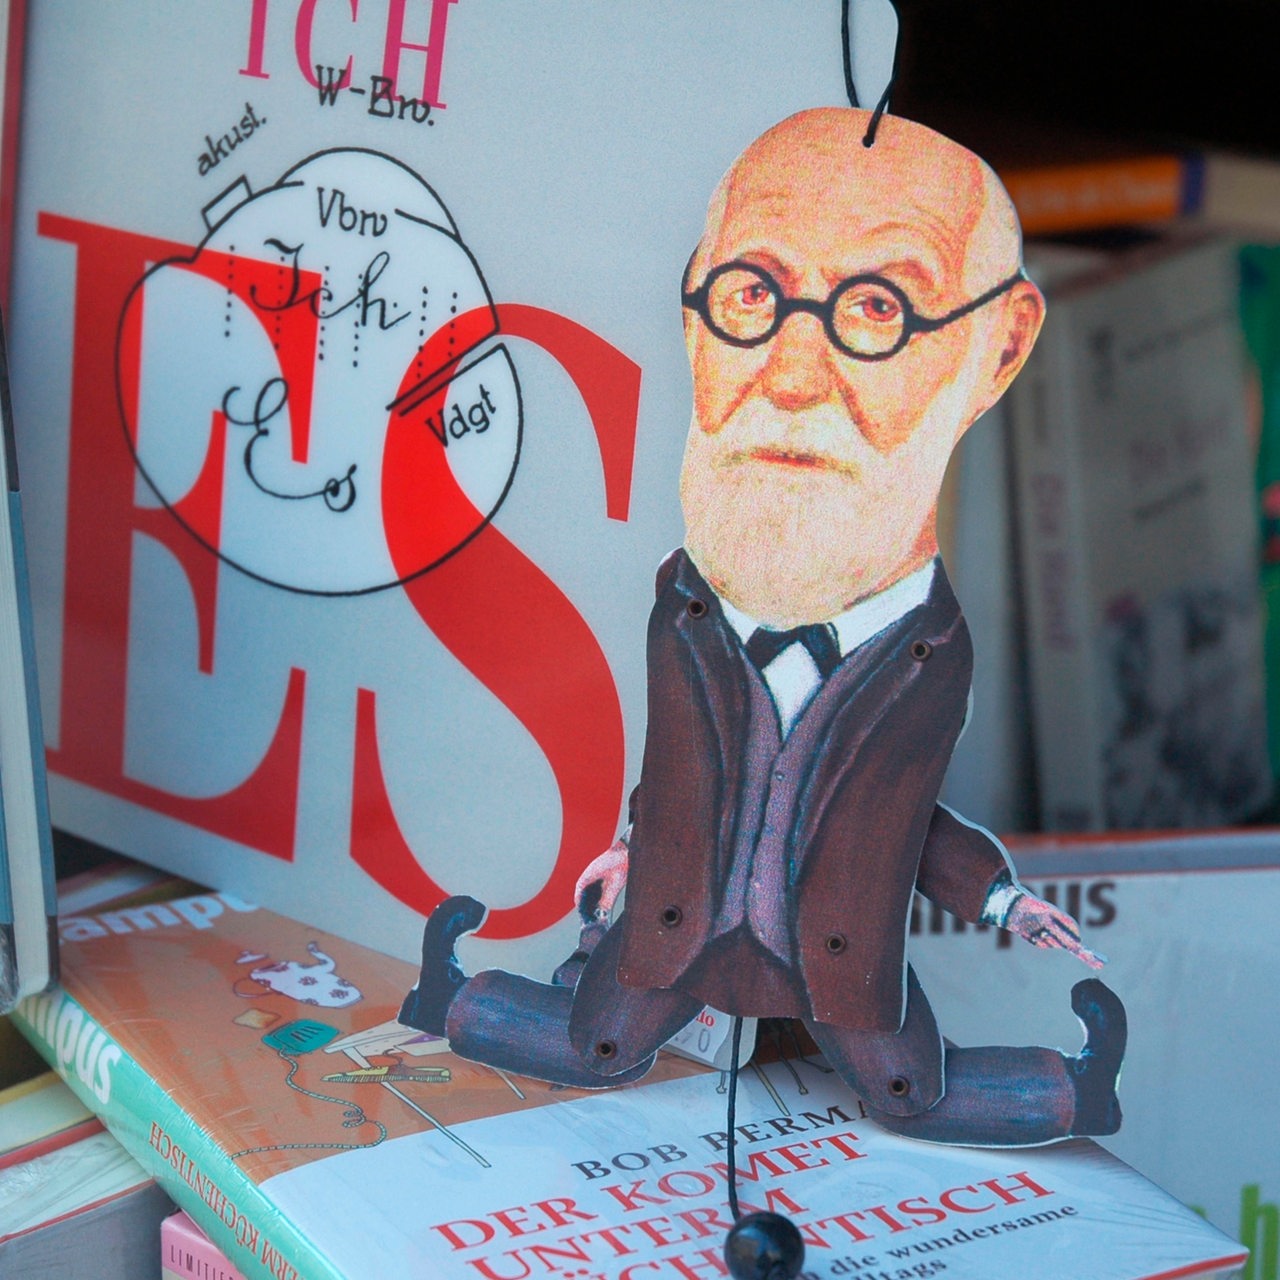 Sigmund Freud als Hampelmann in der Auslage eines Wiener Buchgeschäftes, dahinter sein Buch "Das Ich und das Es"